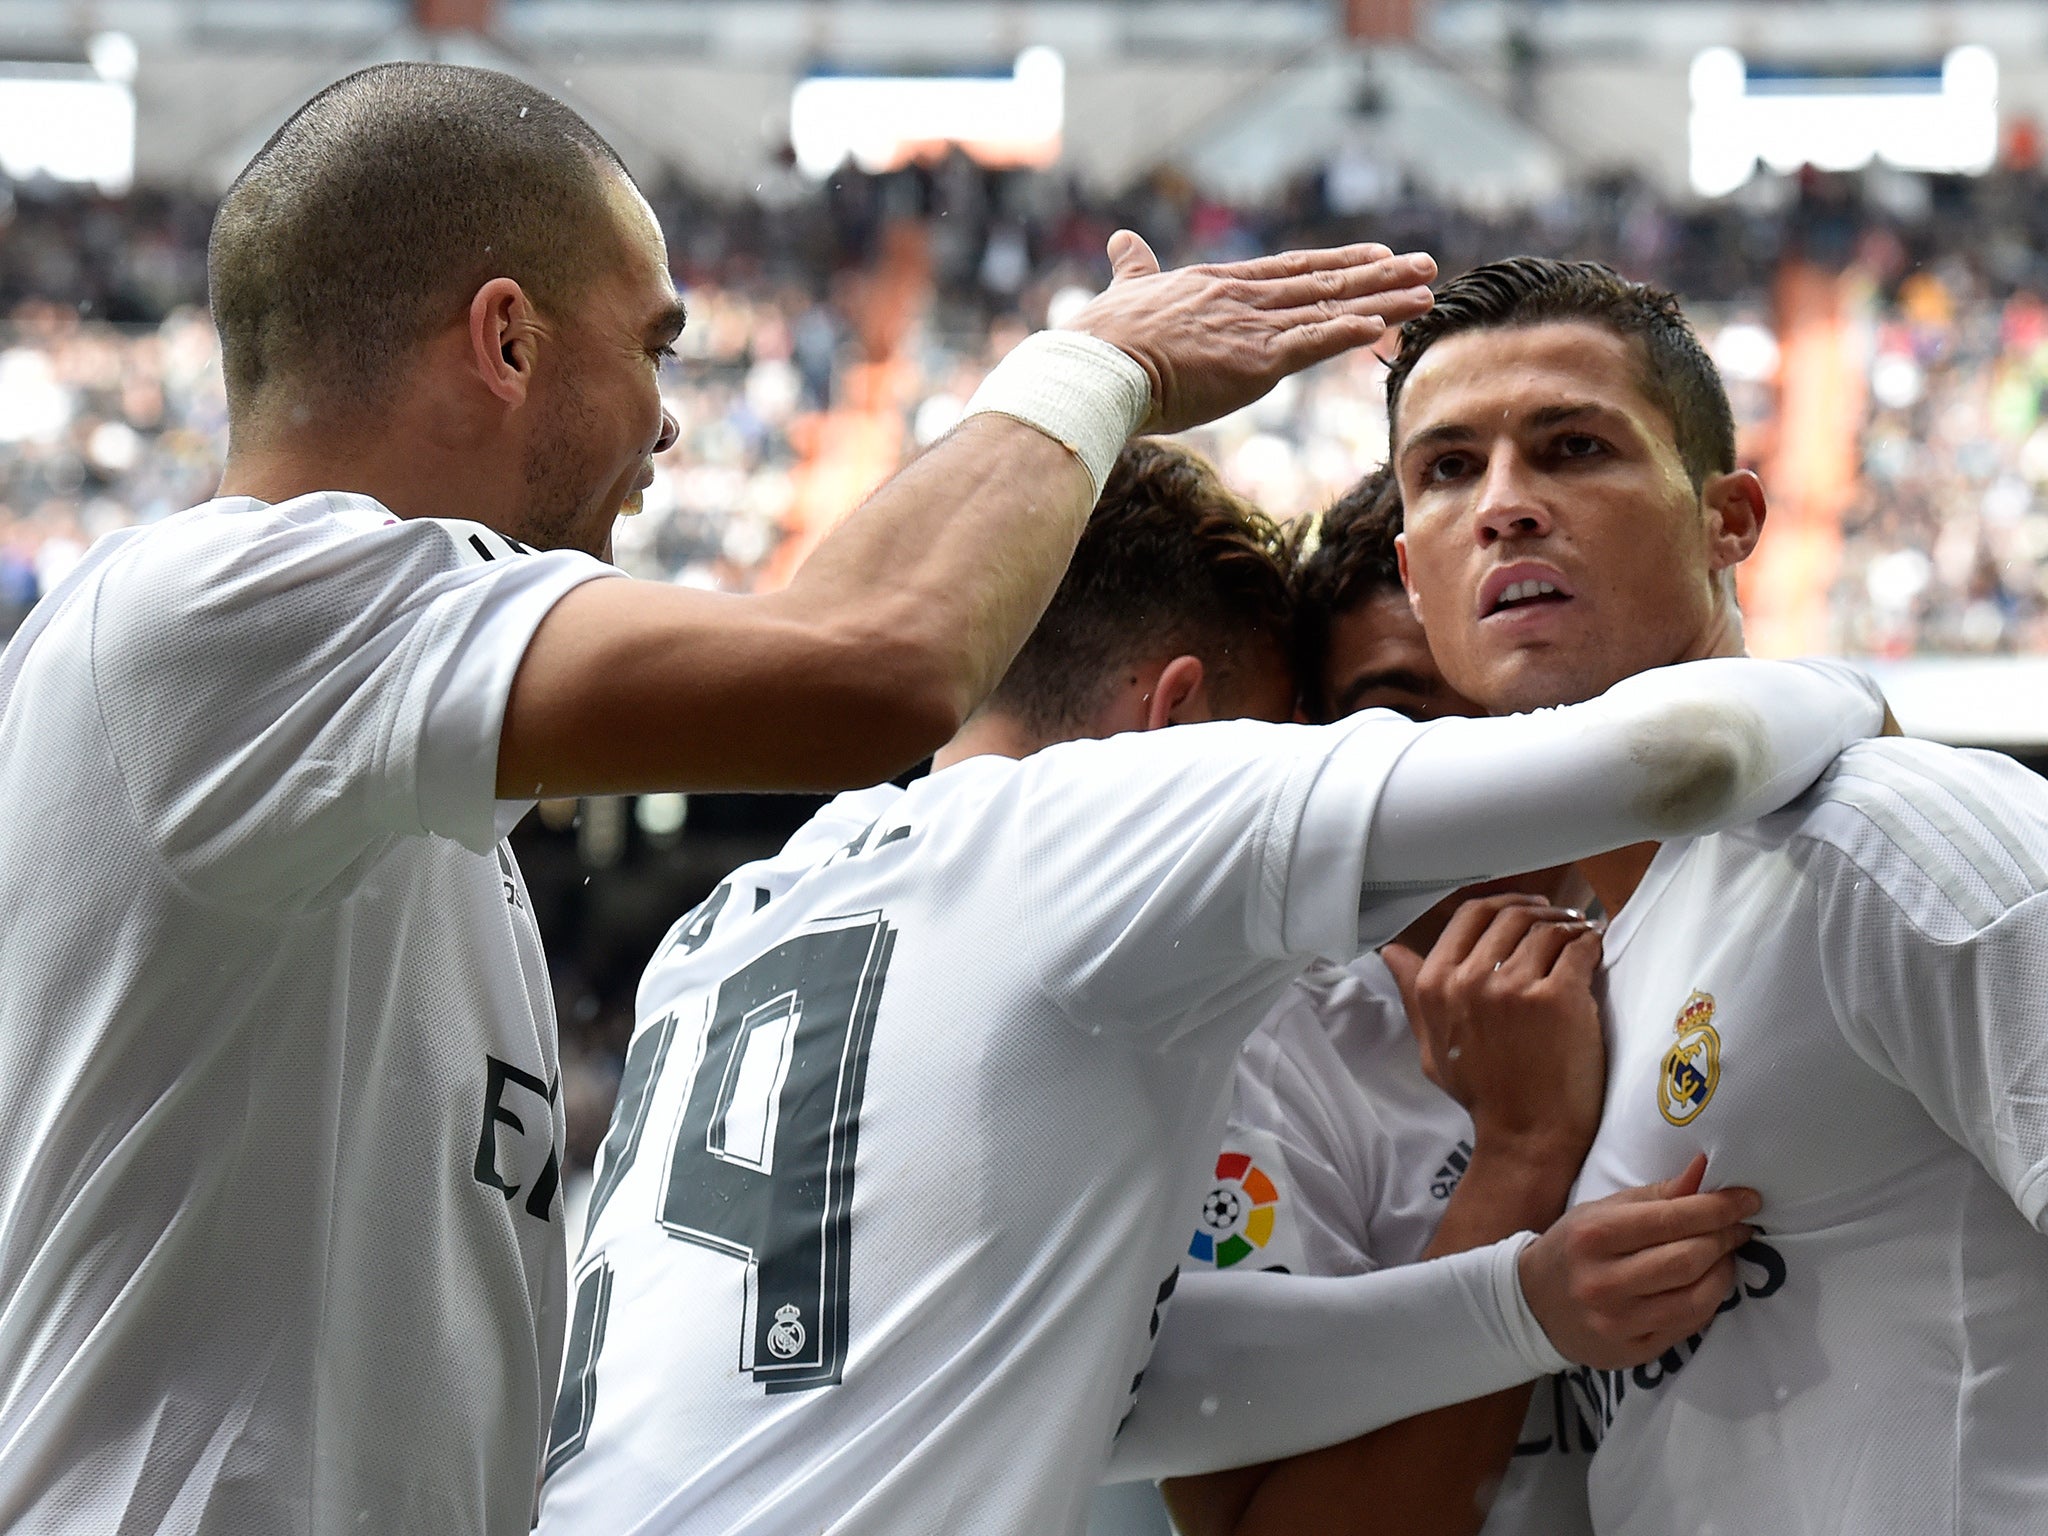 Cristiano Ronaldo celebrates his goal with team-mates